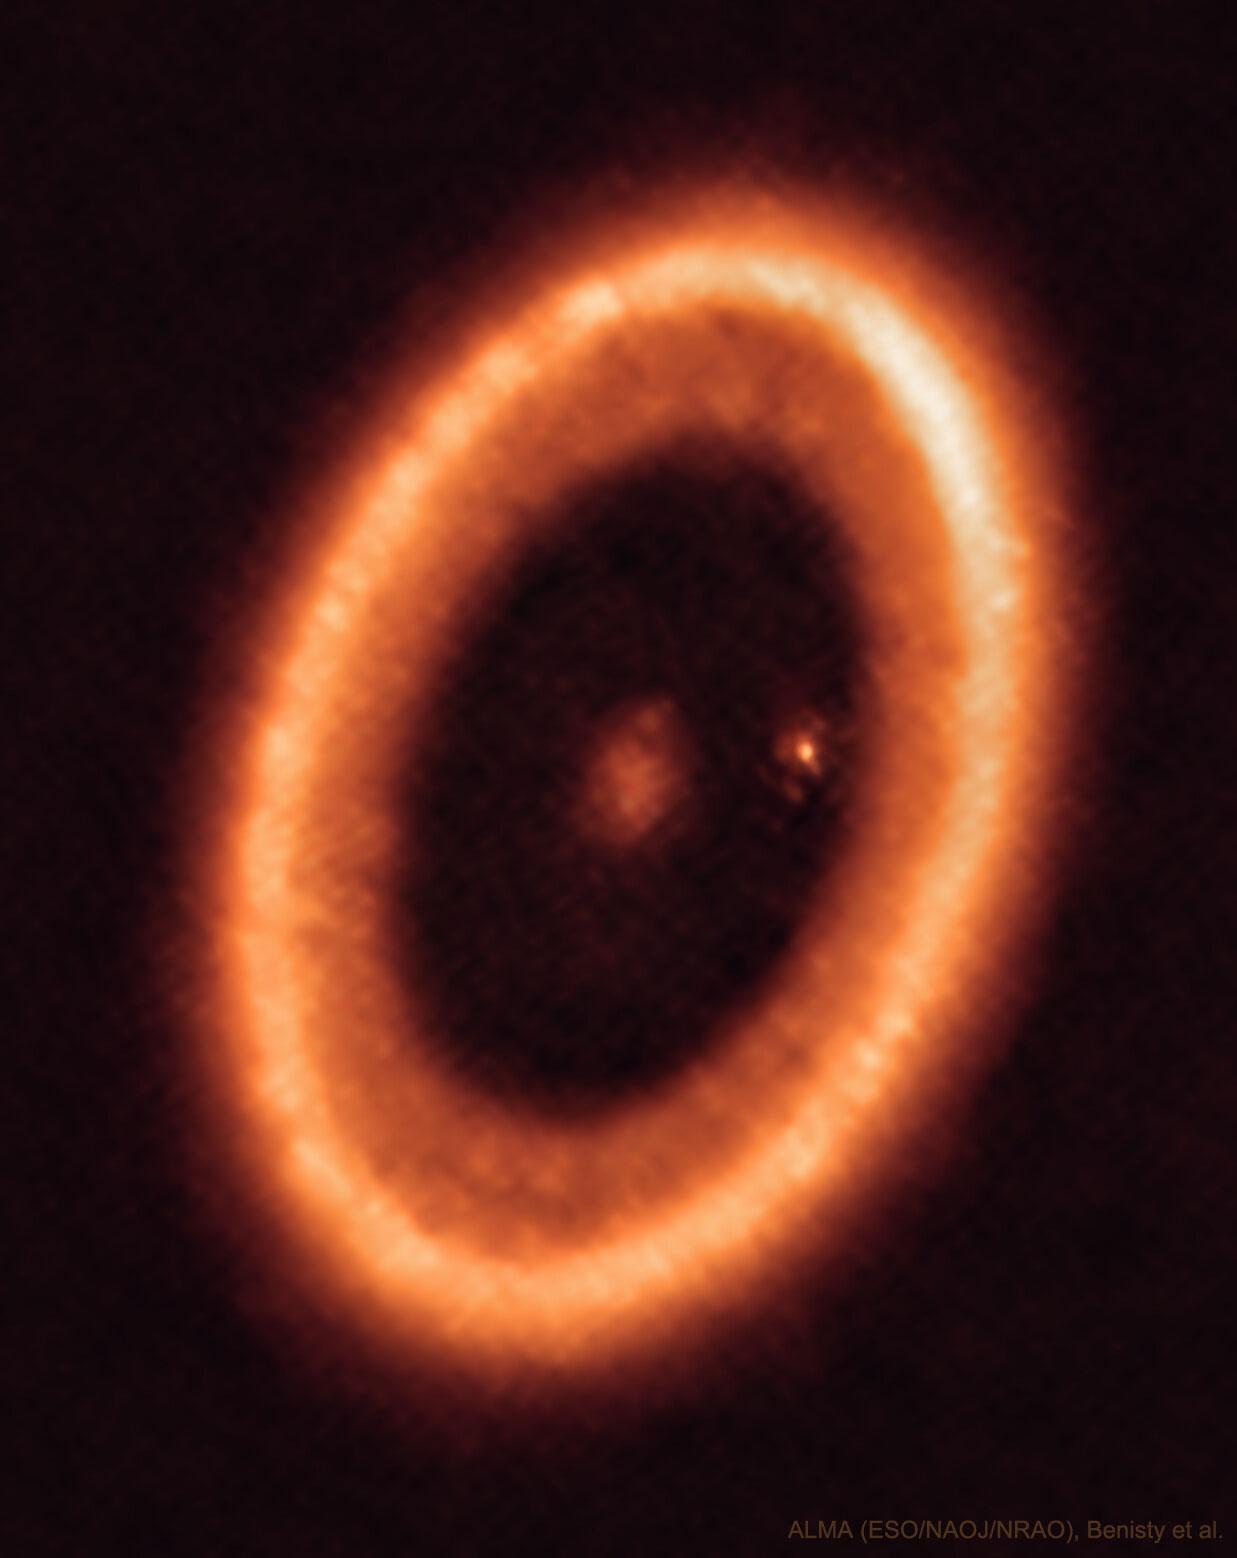 حلقةٌ إهليلجيّةٌ برتقاليّةٌ هي قرصٌ من الغاز والغبار حول النجم "پي‌دي‌إس 70". في مركز القرص توجد بقعة زغبة وقرب الحافّة اليُمنى الداخليّة للقرص توجد بقعة زَغِبة أُخرى.